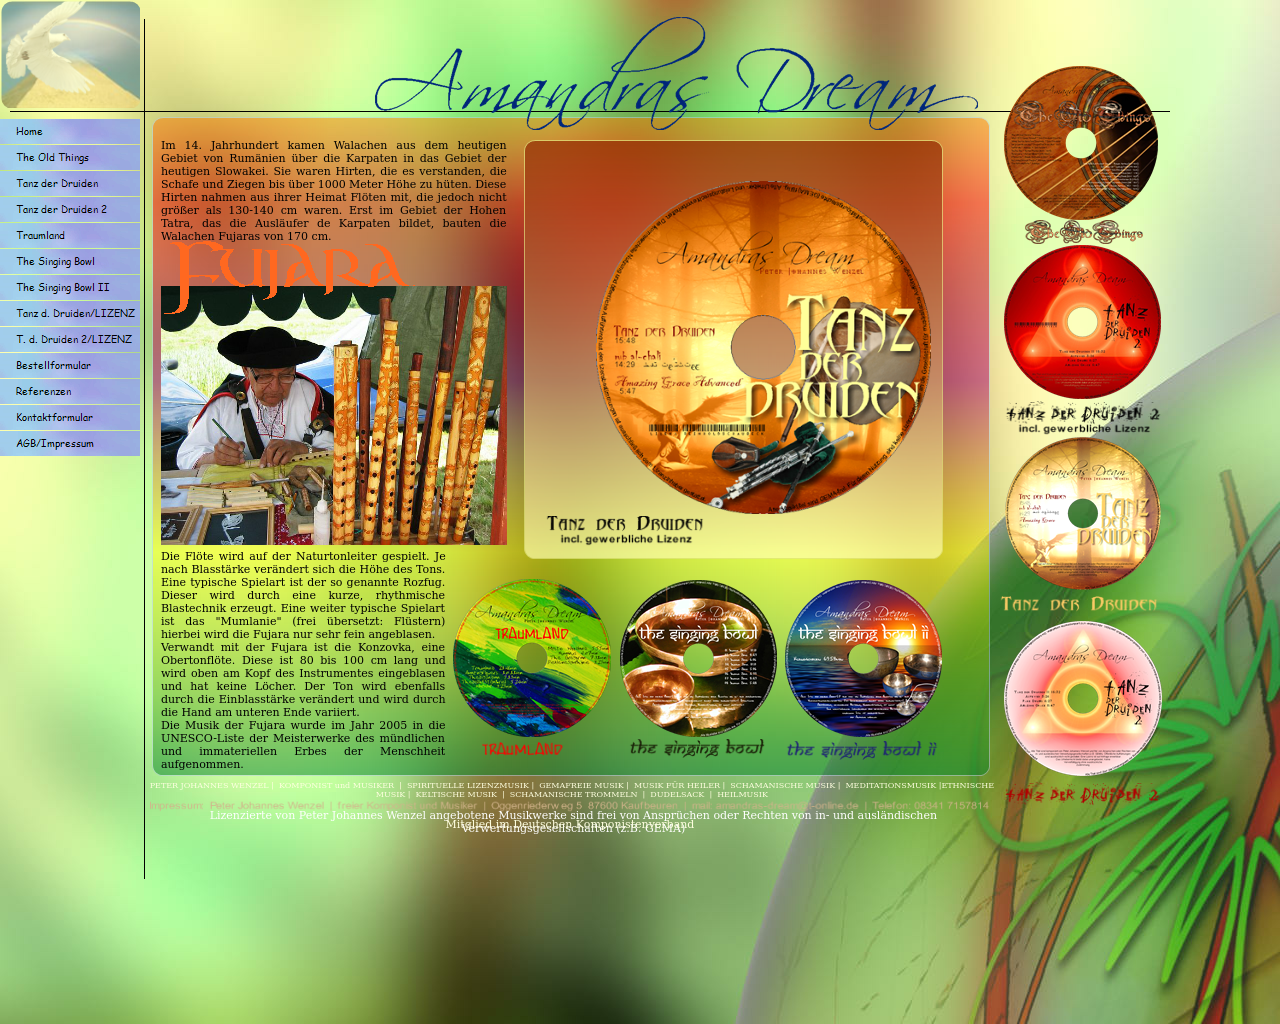 Bild Website amandras-dream.de in 1280x1024